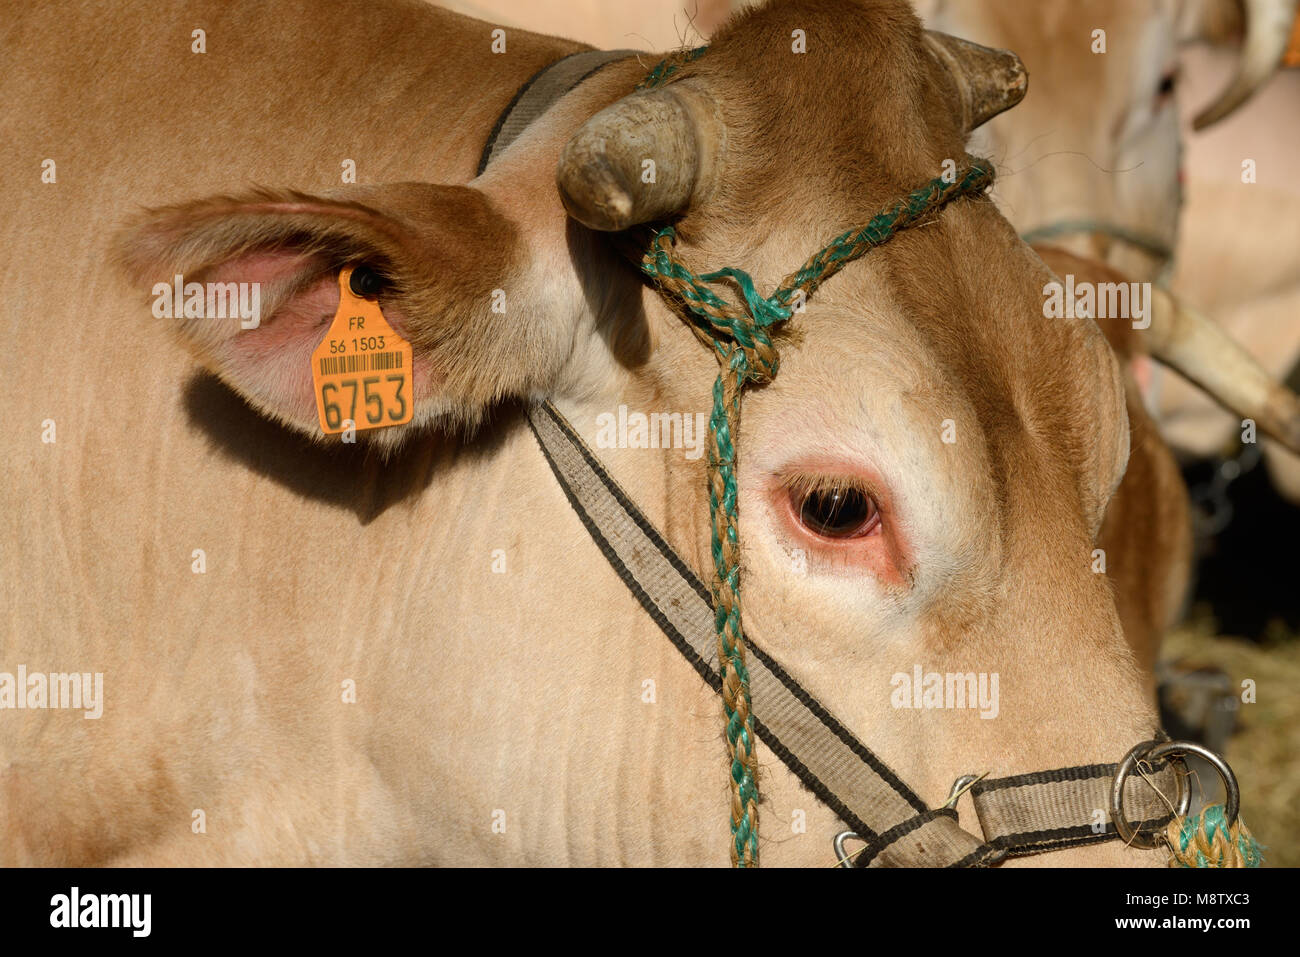 Blonde d'Aquitaine Carni bovine Vacca o il bestiame con la rintracciabilità o il tag di identificazione fissato all'orecchio Foto Stock